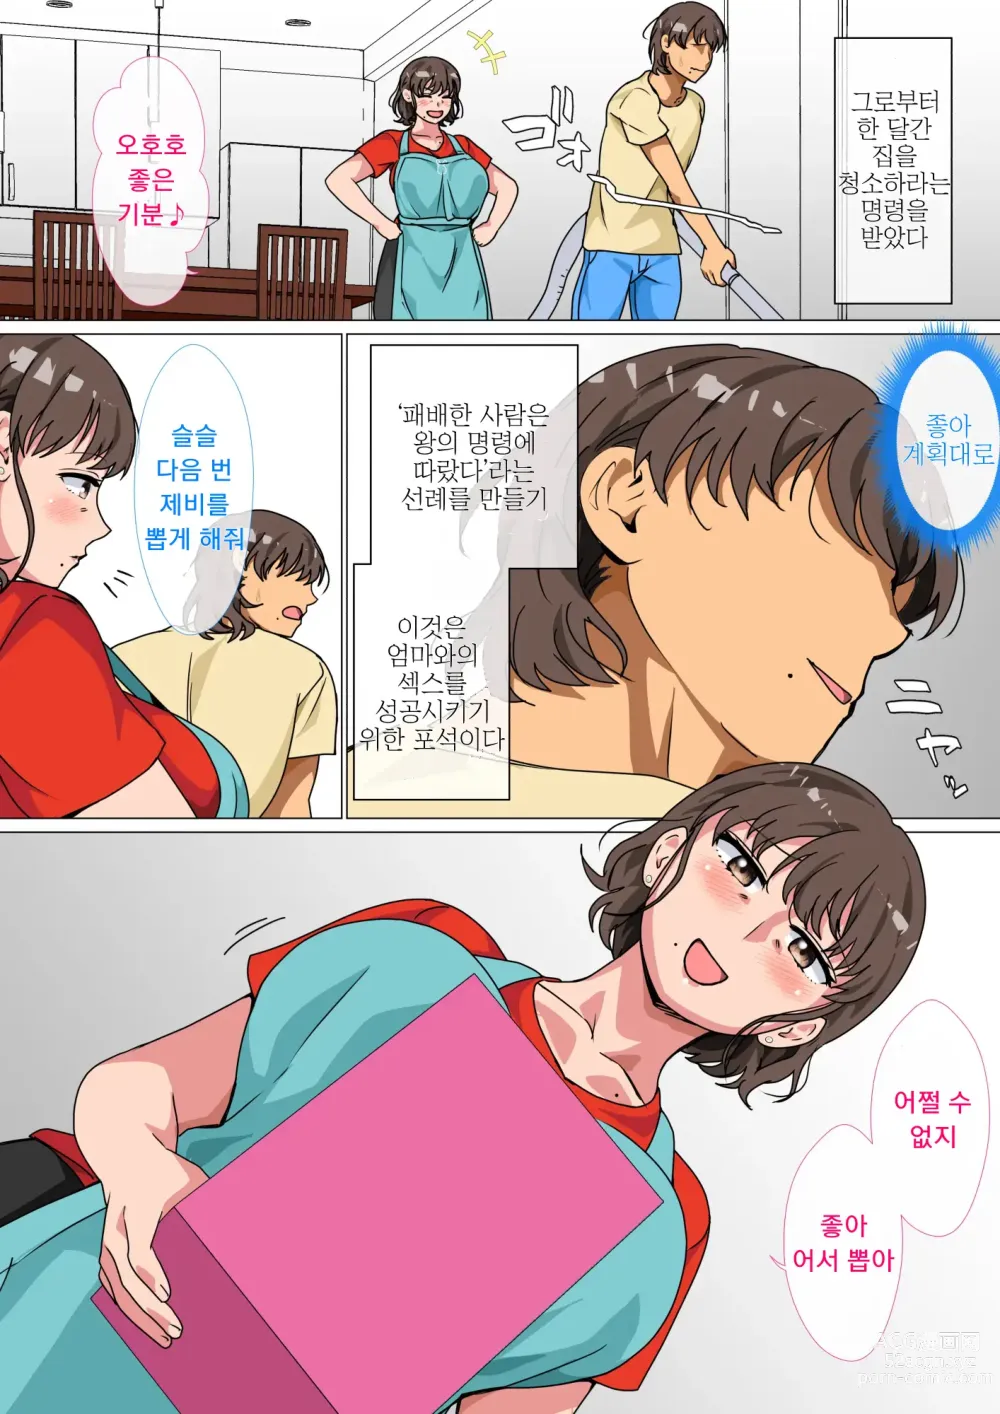 Page 11 of doujinshi 왕게임으로 명령해서 엄마랑 섹스한 이야기